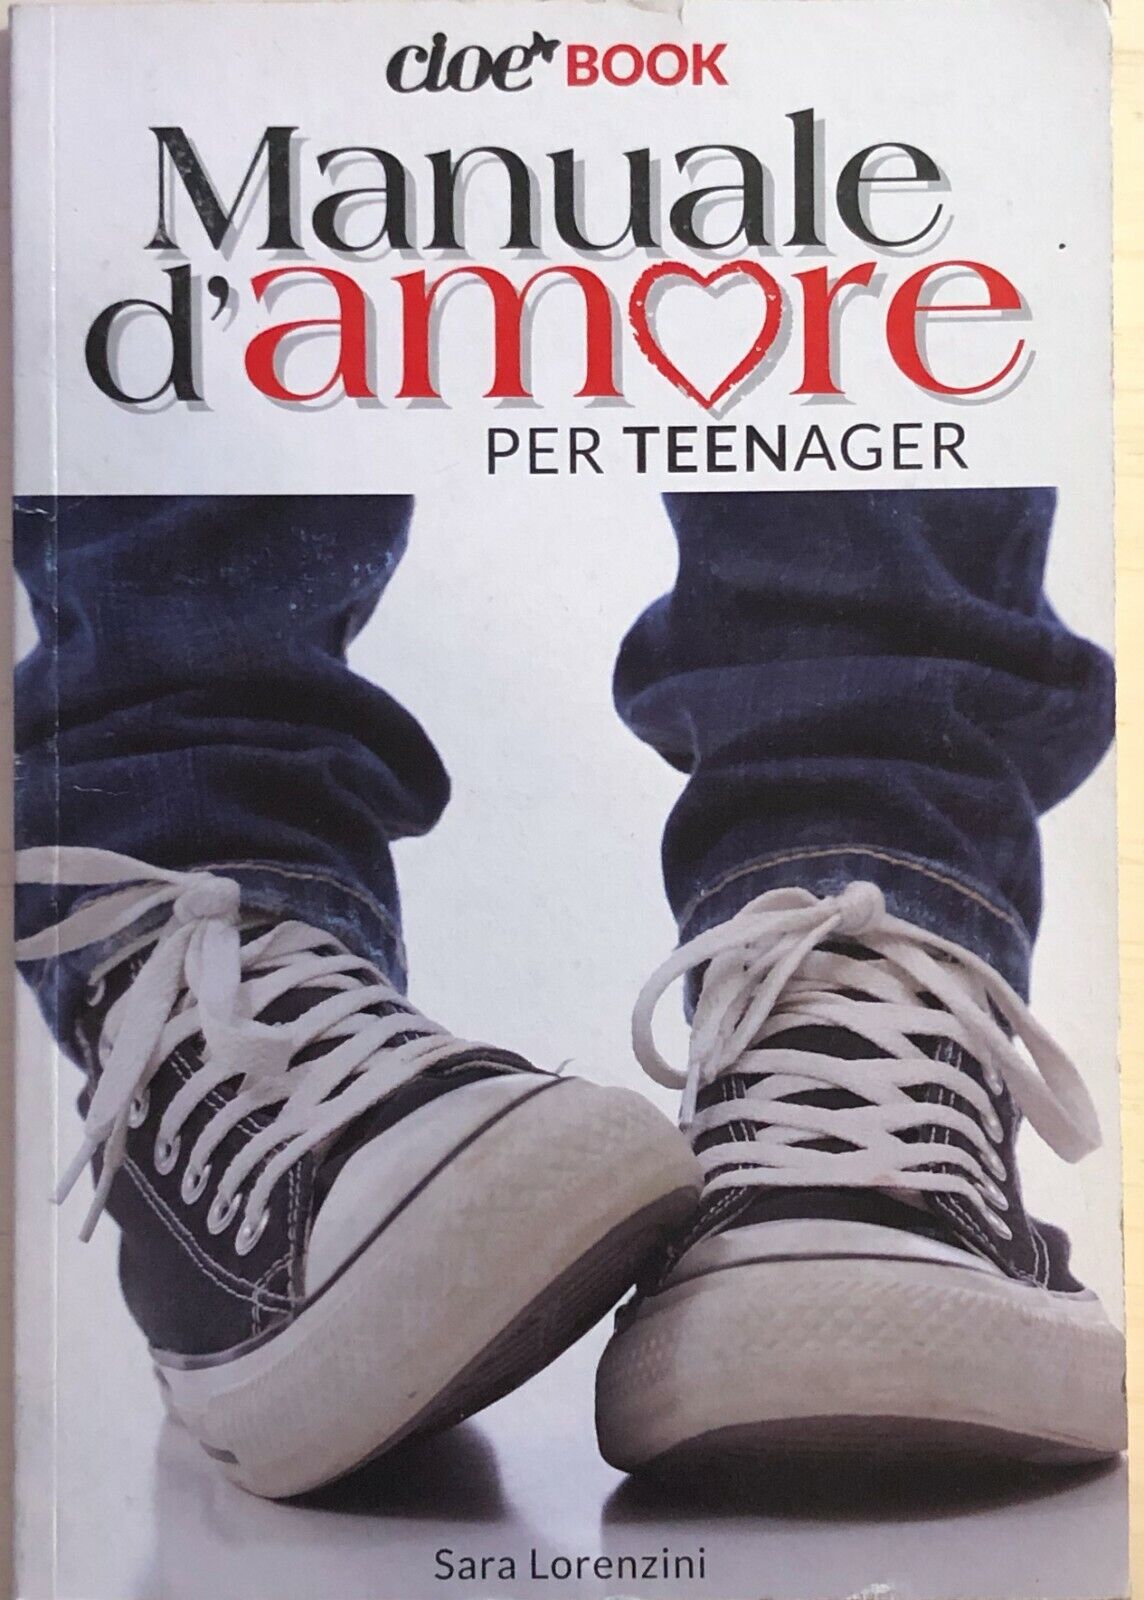 Manuale d'amore per teenager di Sara Lorenzini, 2013, Cloe book